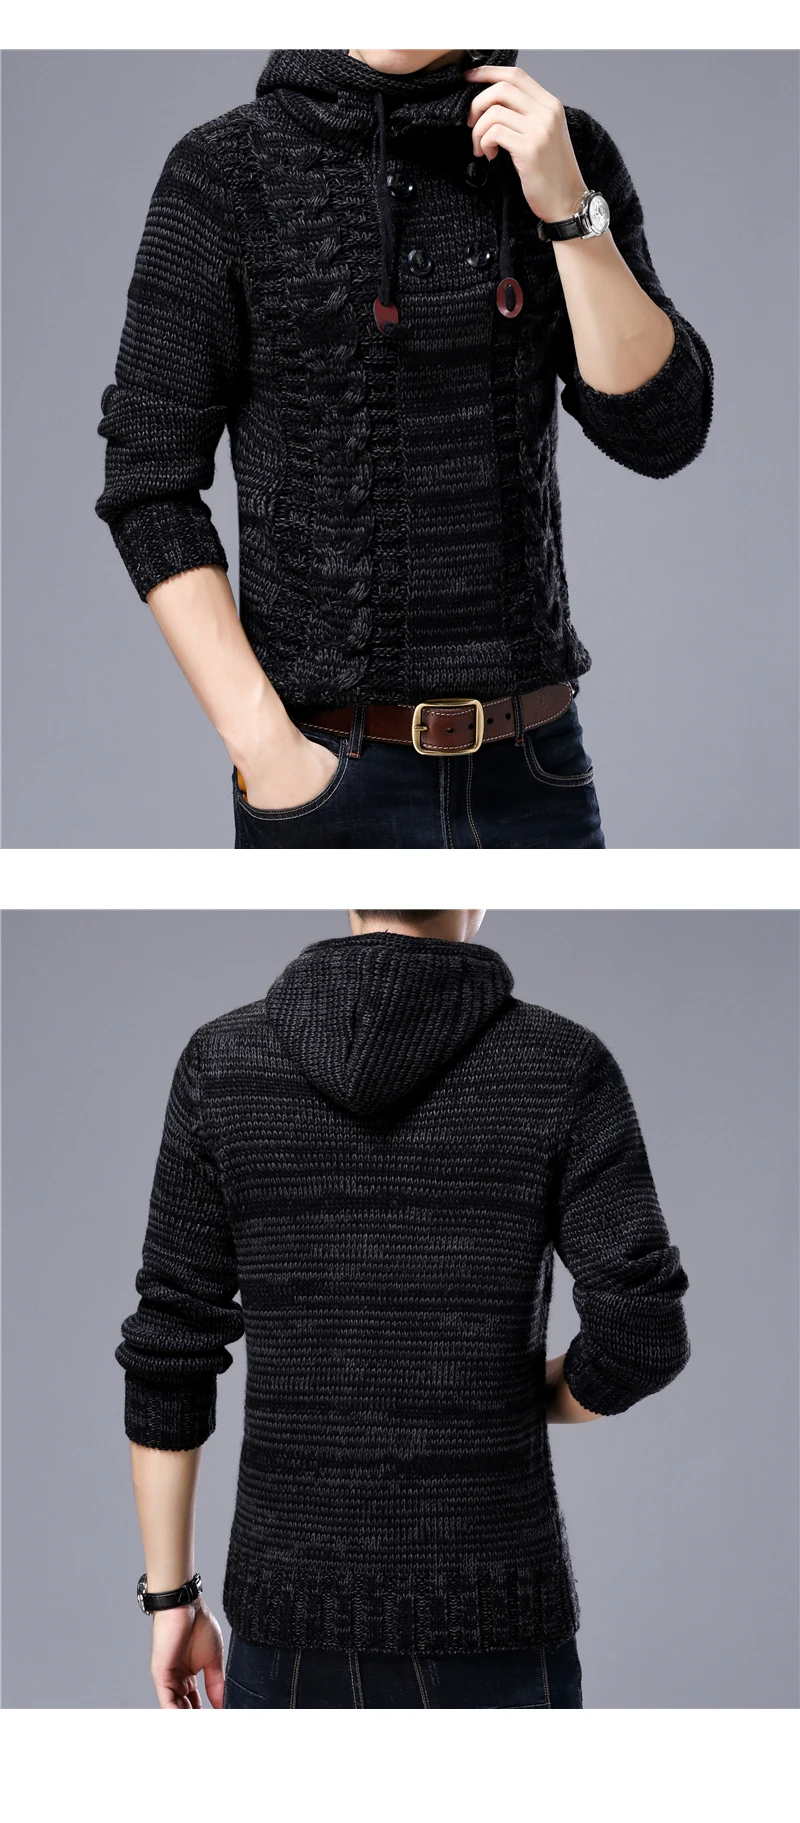 QUANBO мужской свитер брендовая одежда новый зимний thinck теплый вязаный свитер кардиган мужской моды с капюшоном 35% шерсть свитер пальто S-4XL